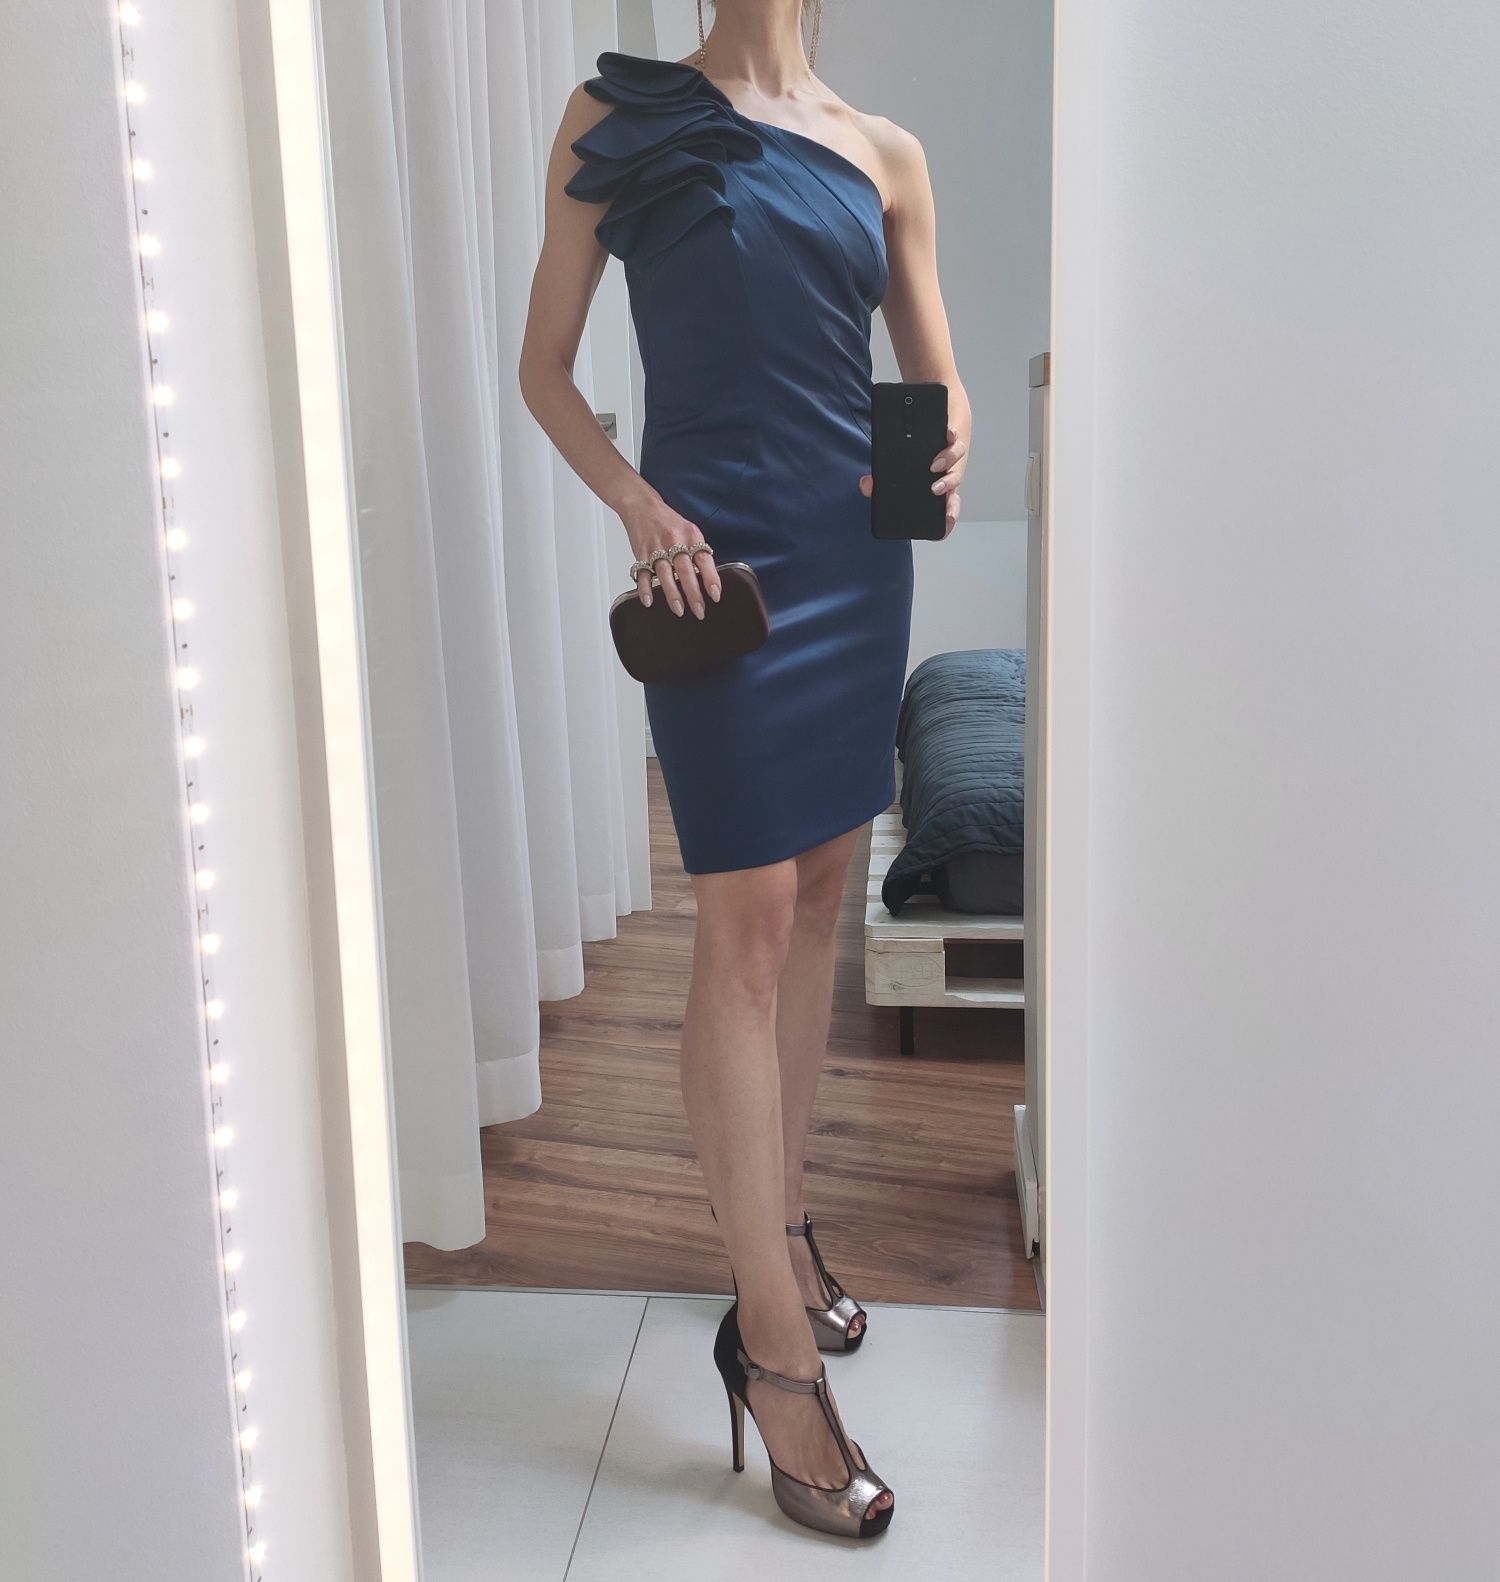 Sukienka Orsay niebieska elegancka na jedno ramię Wesele Impreza